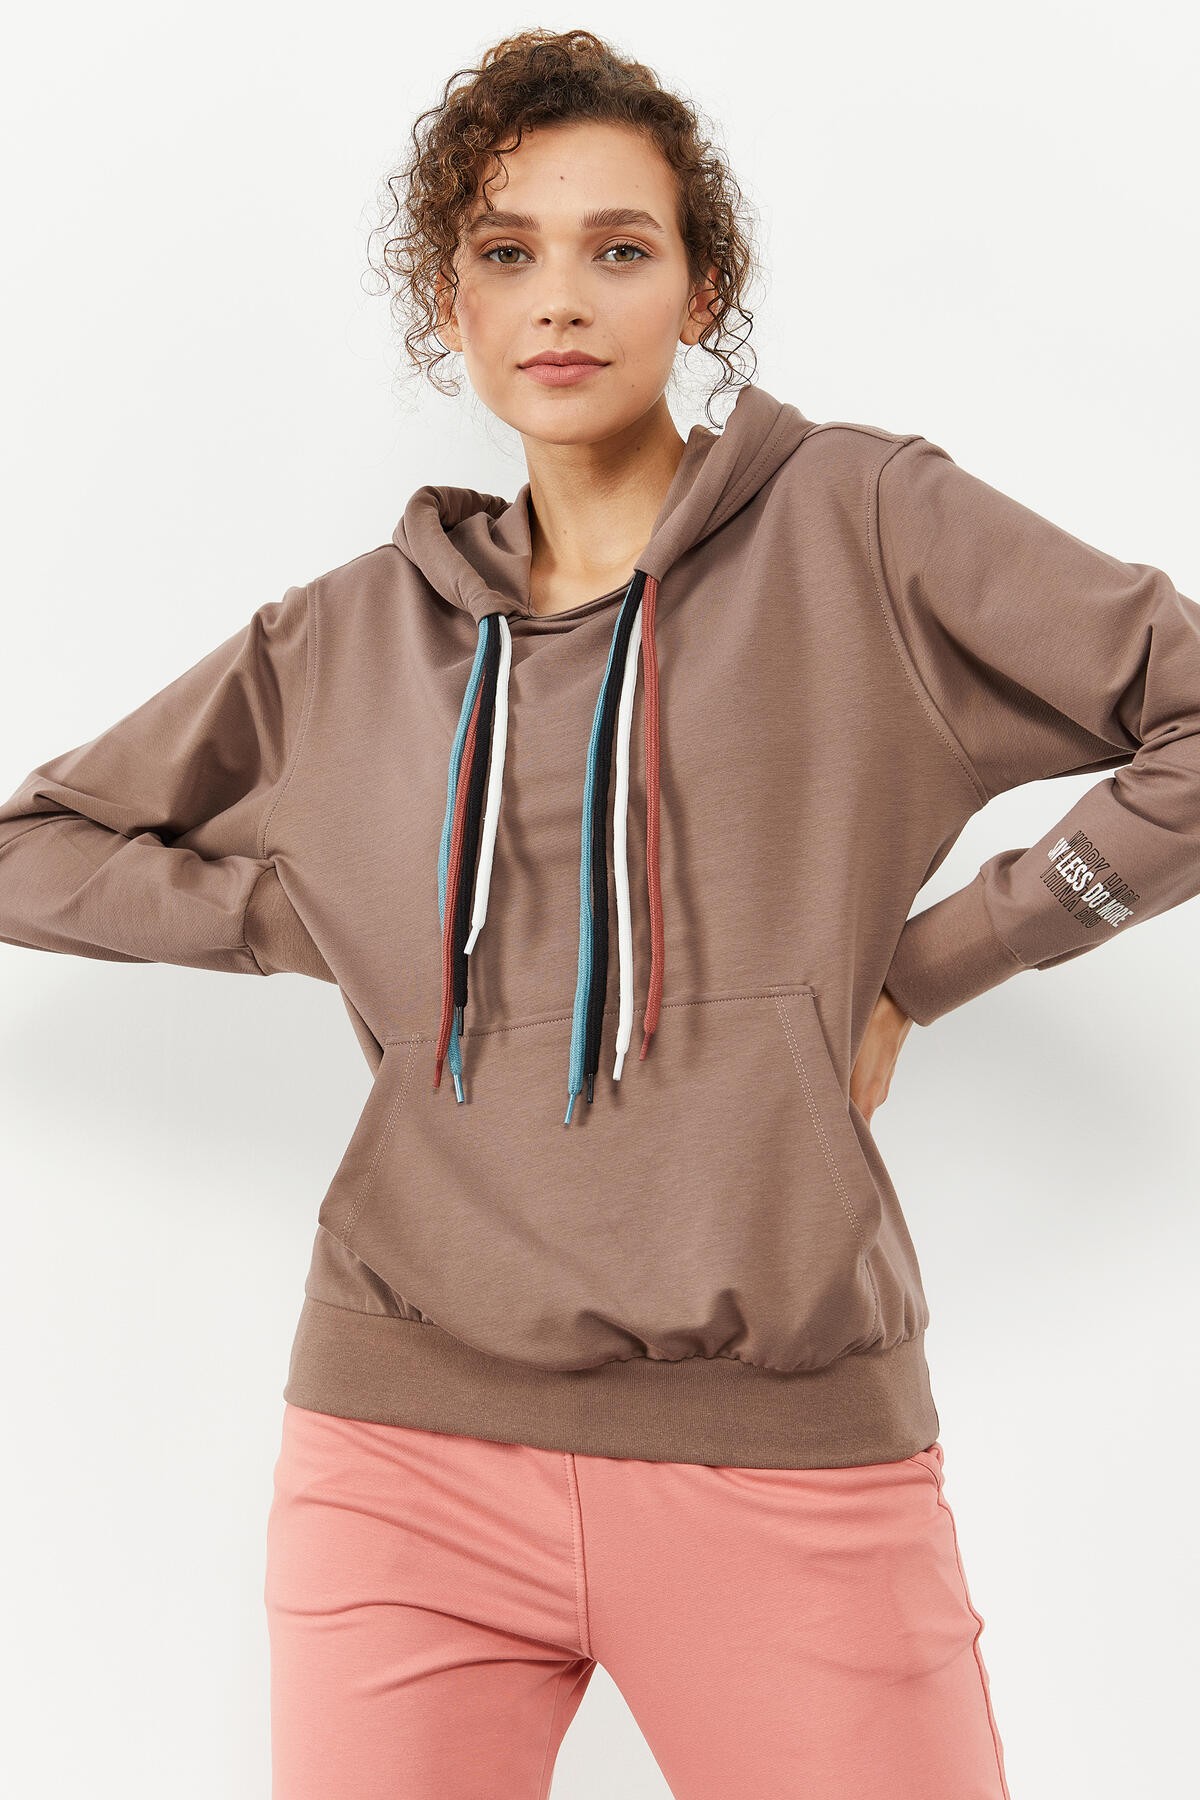 TommyLife - Toprak Dört Renk Bağcıklı Kadın Oversize Sweatshirt - 97157